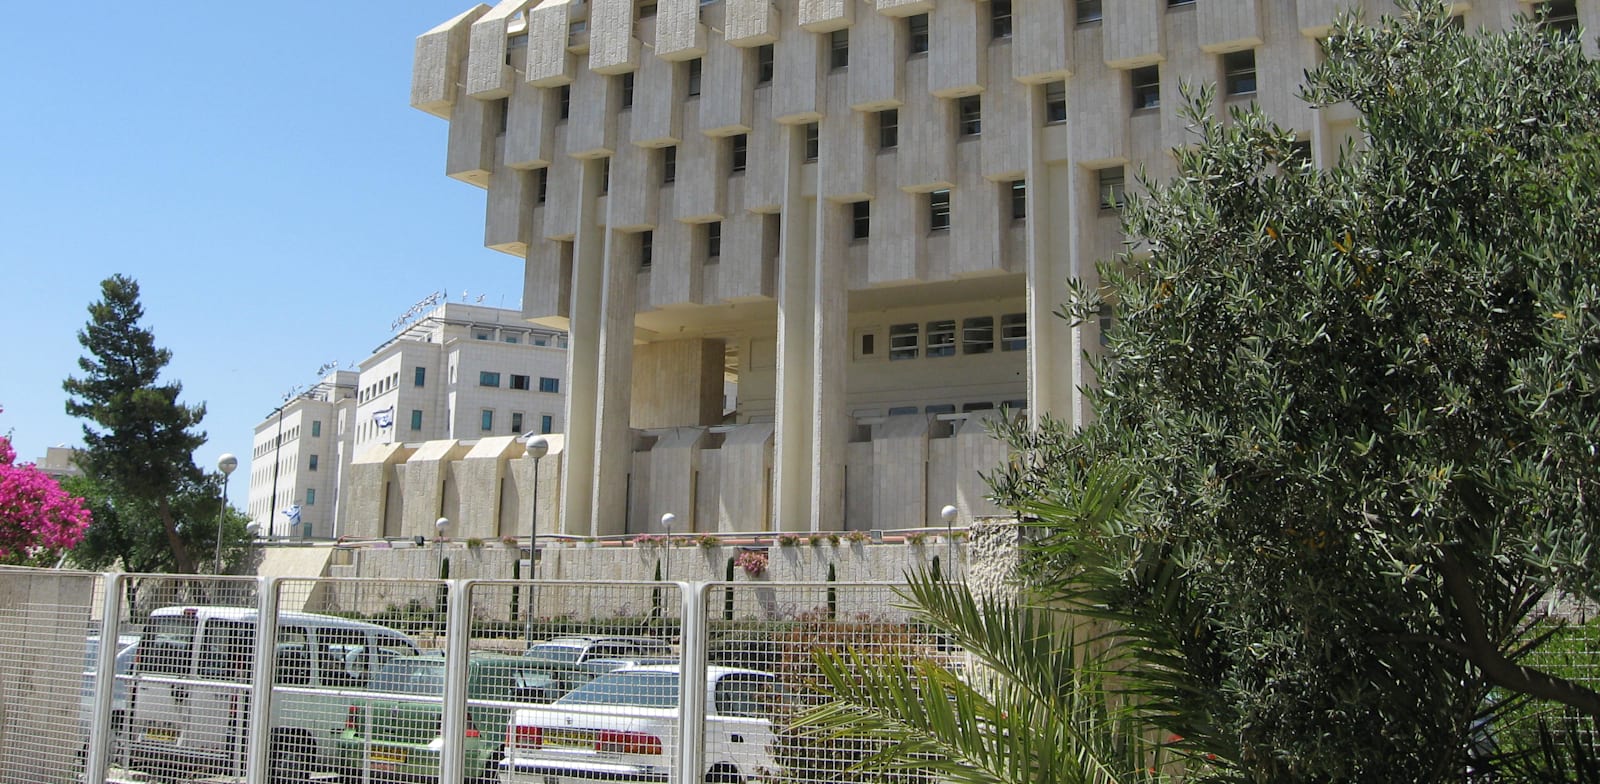 בבנק ישראל מעוניינים להעלות את הריבית, אך הם מעדיפים לעקוב אחרי הפד / צילום: אורית דיל